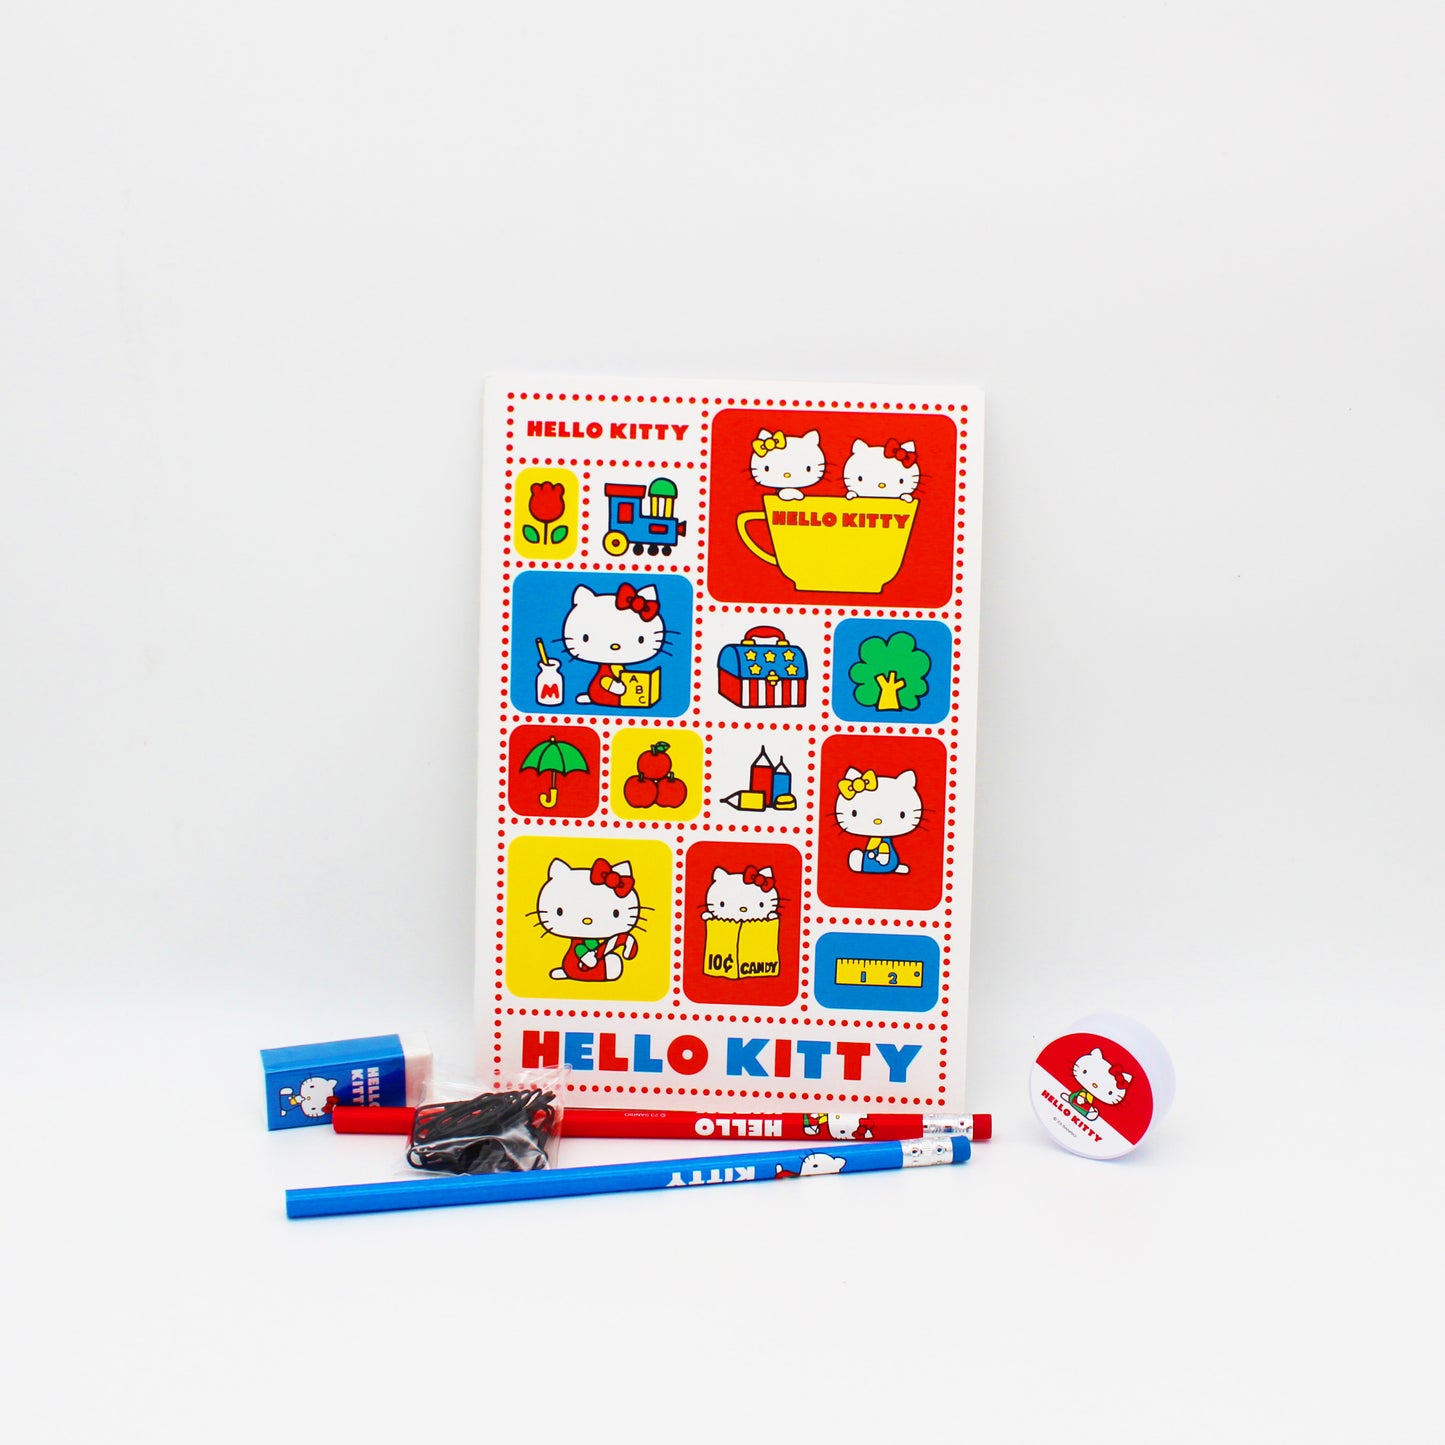 Sanrio Kollekció - Hello Kitty Irodaszer készlet